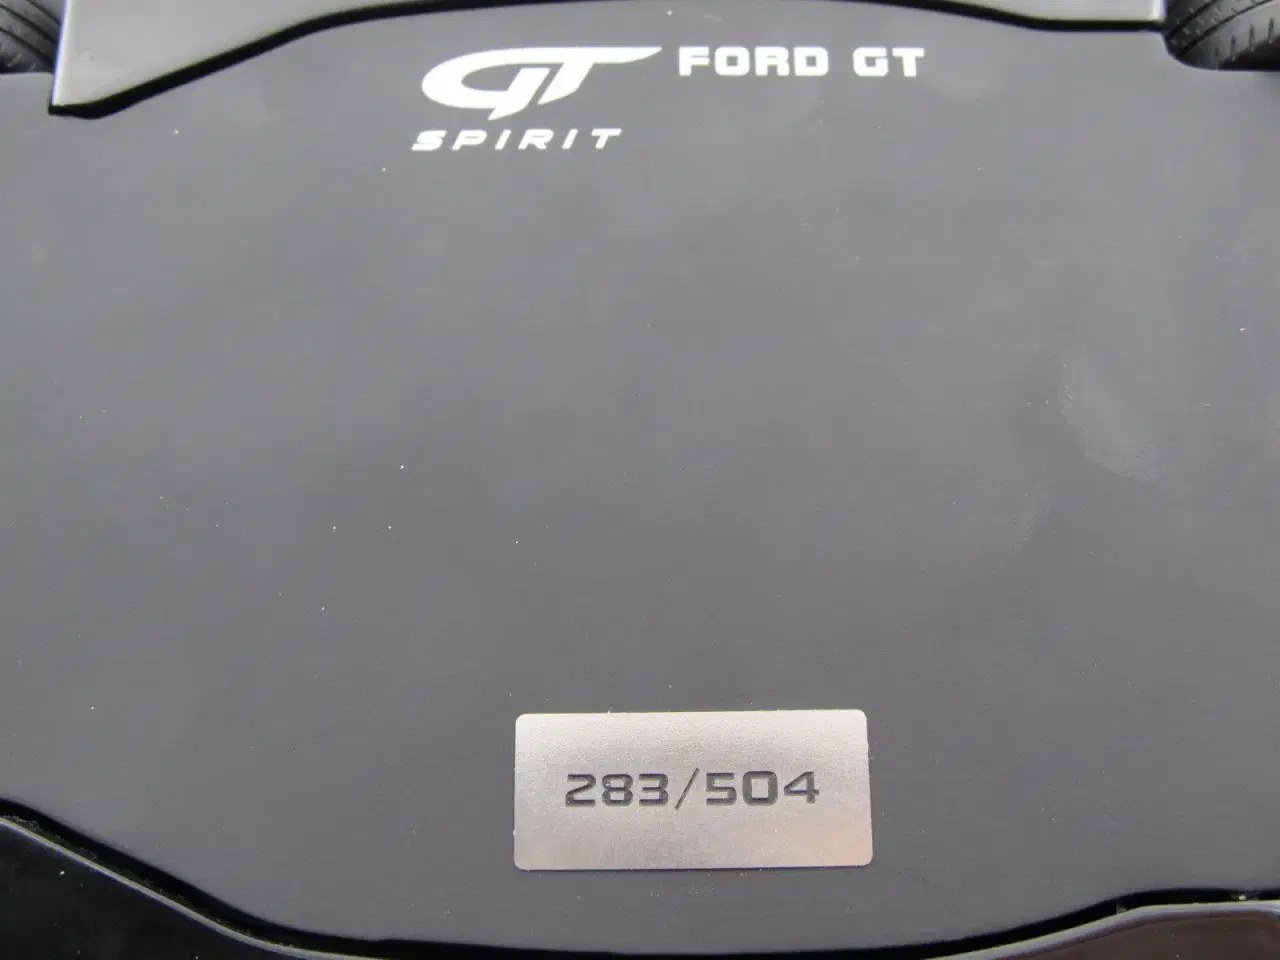 Billede 9 - 2017 Ford GT Limited Edition - 1:18